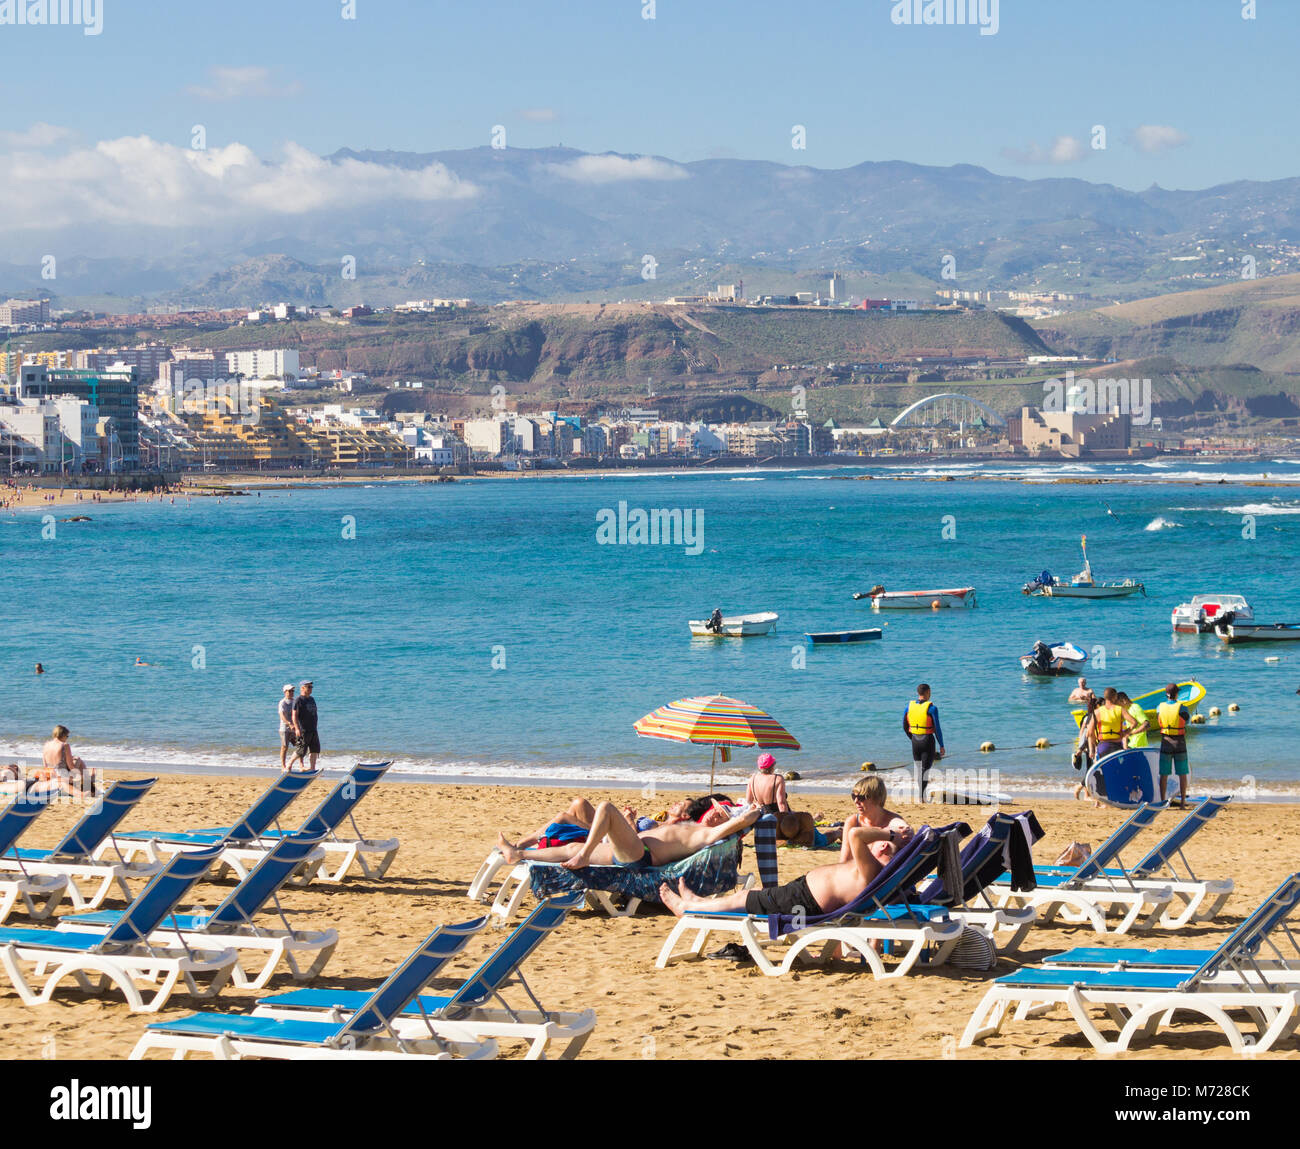 Blick auf den Strand Las Canteras in Las Palmas von La Puntilla, Berge im Hintergrund. Playa de Las Canateras, Las Palmas, Gran Canaria, Kanarische Inseln Stockfoto